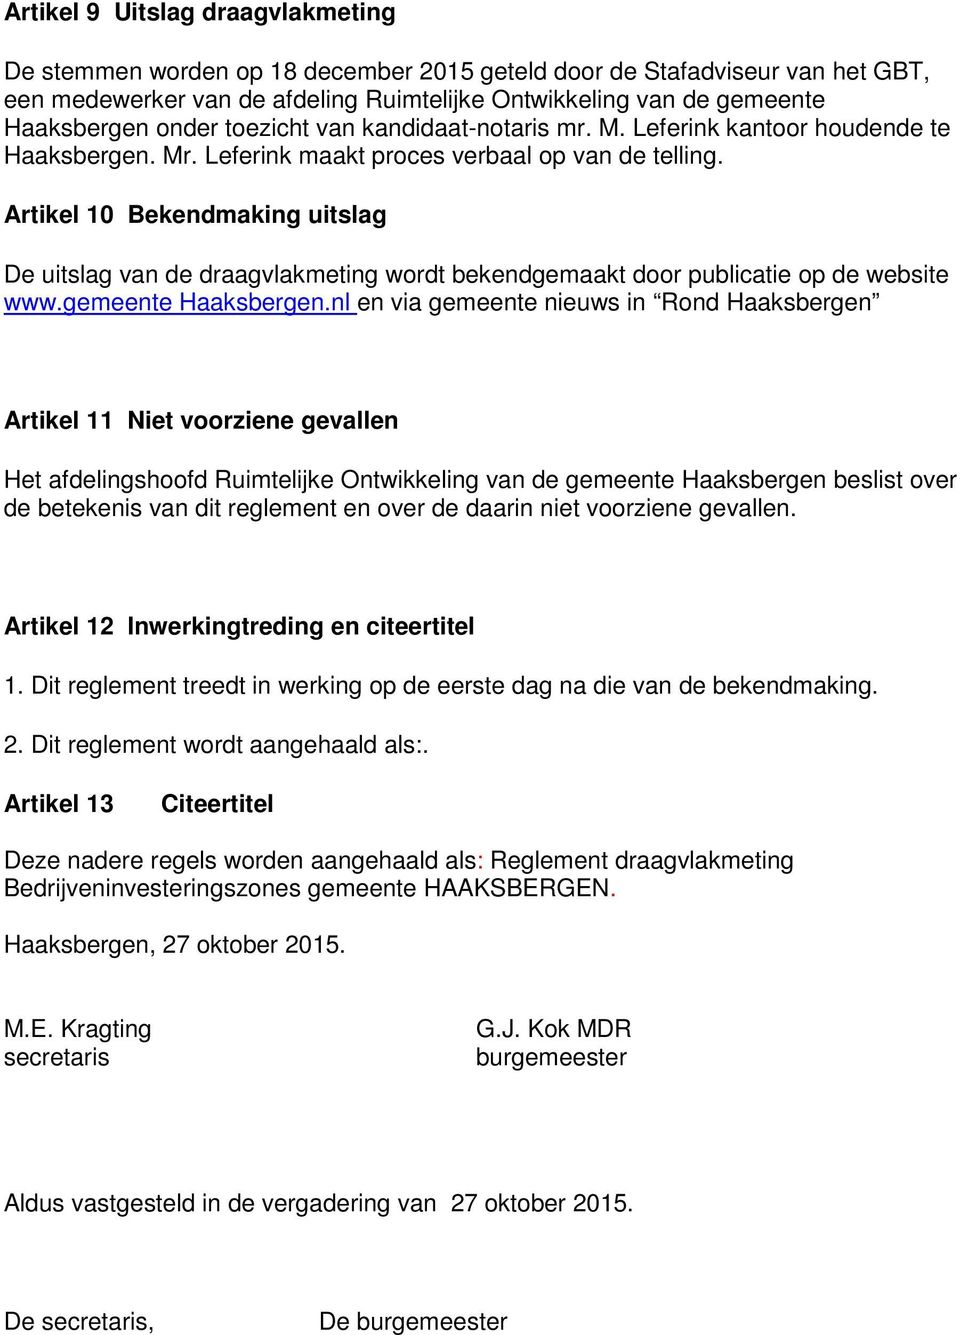 Artikel 10 Bekendmaking uitslag De uitslag van de draagvlakmeting wordt bekendgemaakt door publicatie op de website www.gemeente Haaksbergen.